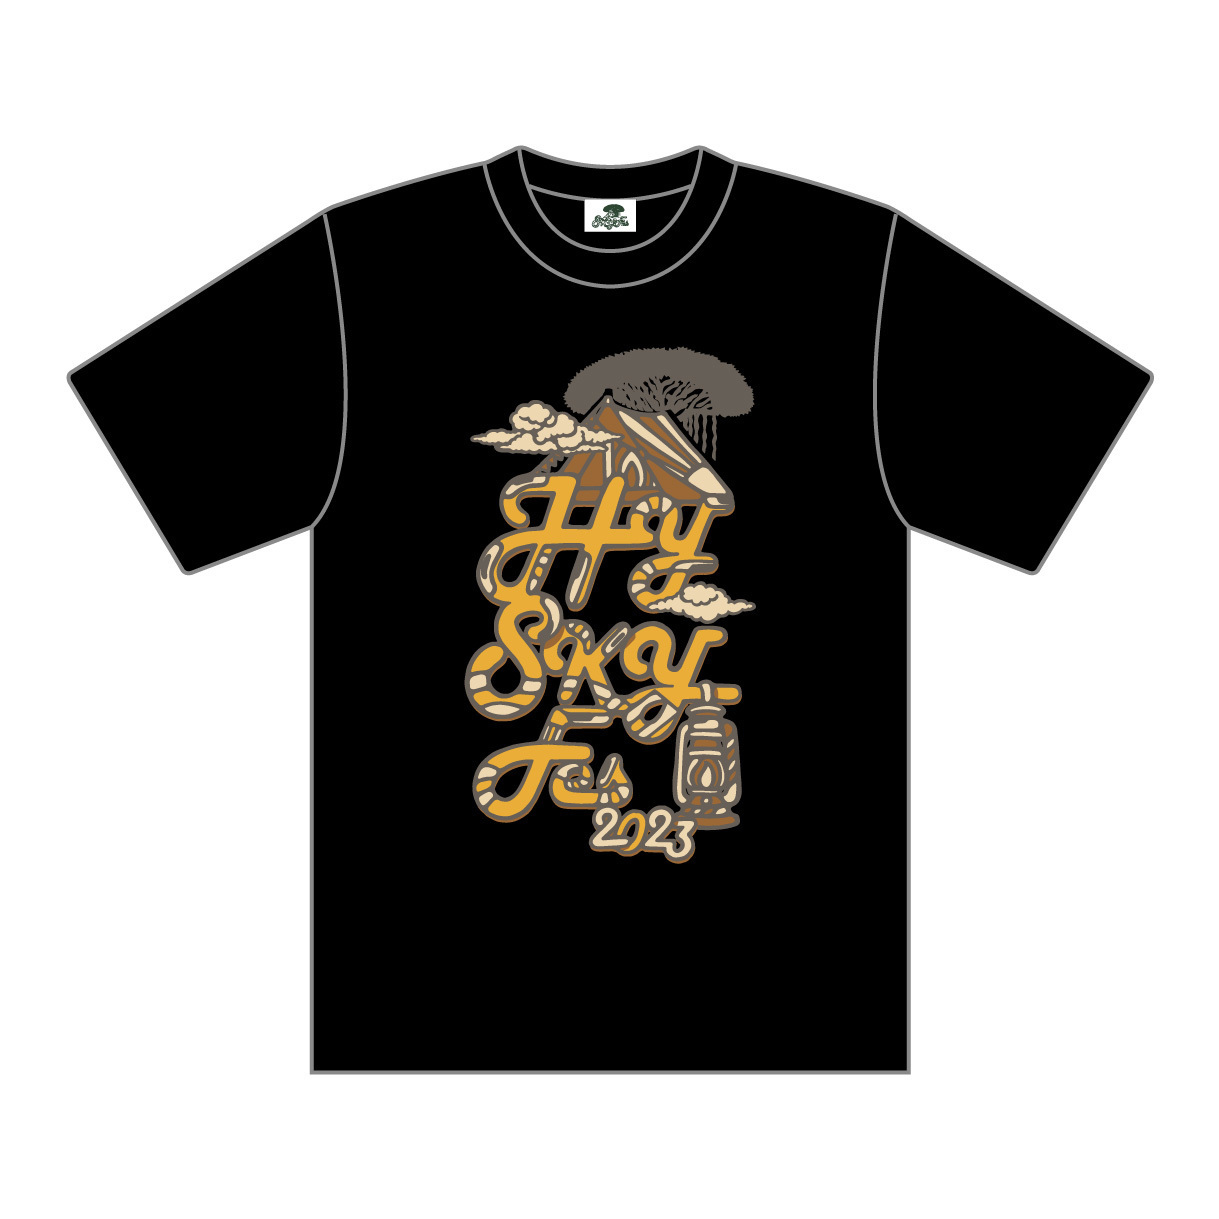 SKY Fes 2023 ロゴ Tシャツ(ブラック)